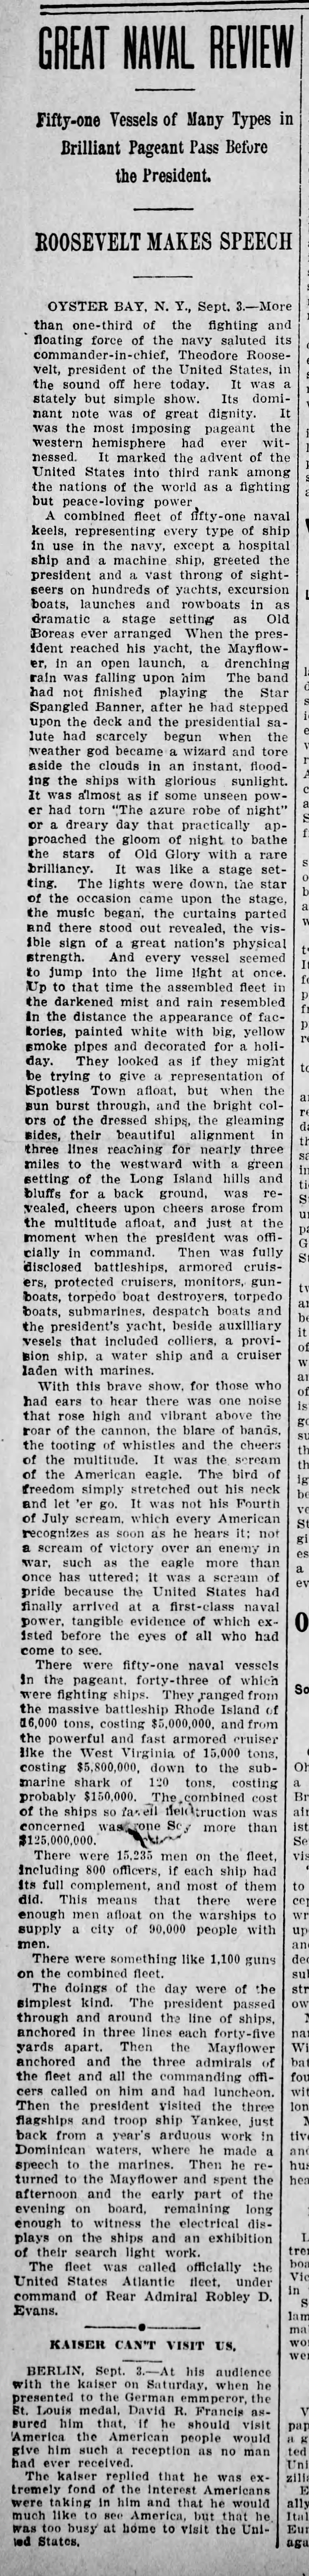 Naval Review in 1906, TR Speaks